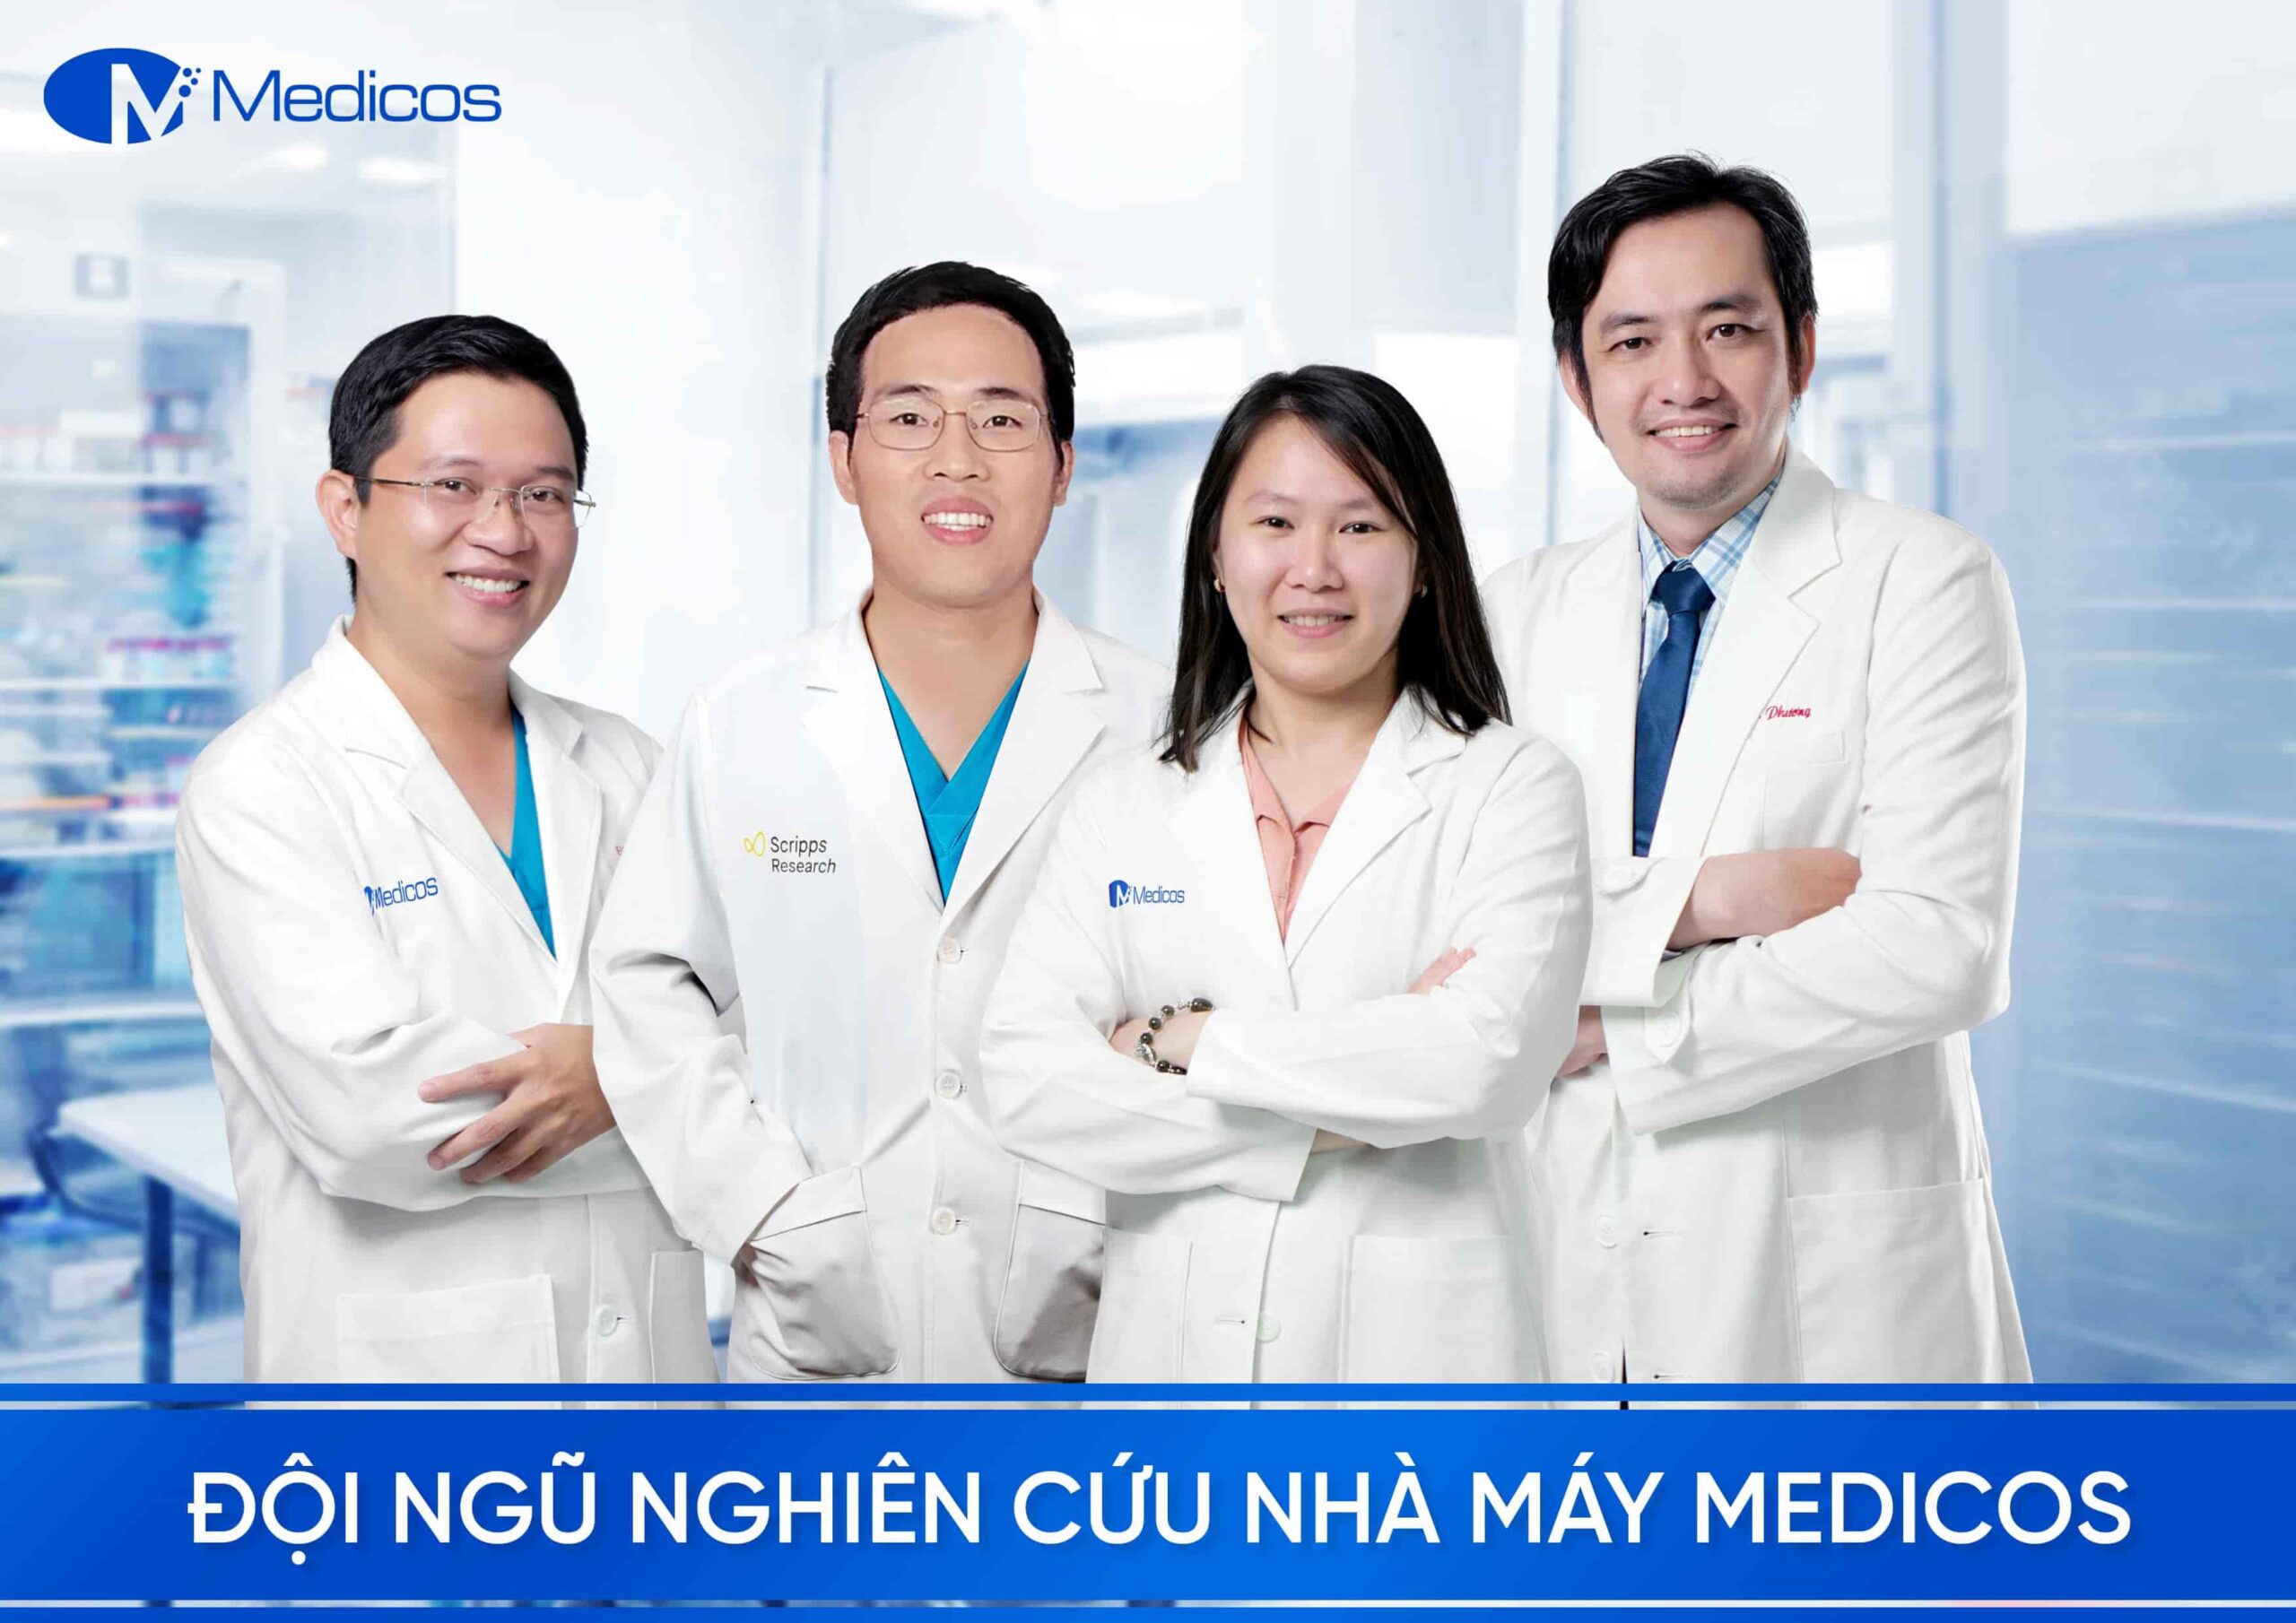 Đội ngũ nghiên cứu nhà máy Medicos